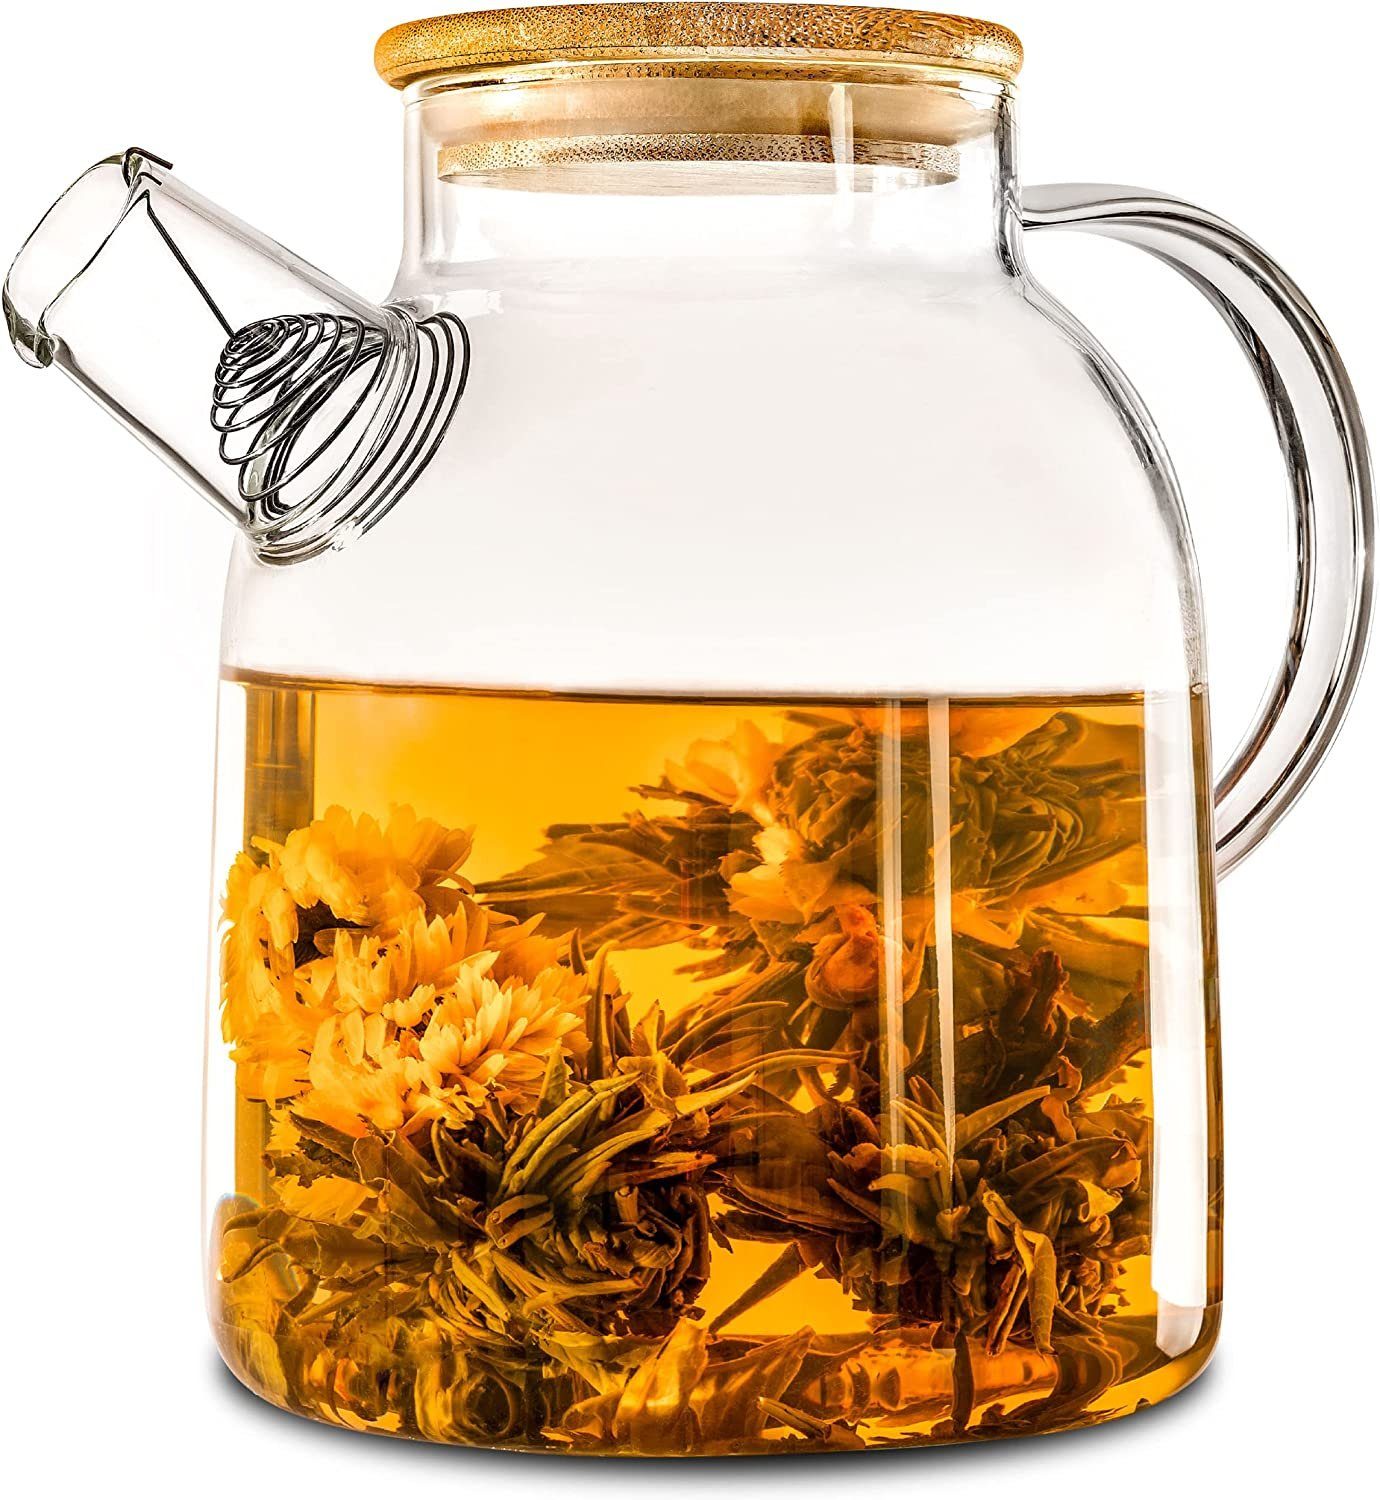 Cosumy Teekanne Glaskanne mit Bambusdeckel 1,5 L, 1,5 l, (Packung, Teekanne mit Deckel), Teekanne mit Bambus Deckel 1,5 Liter - Filter im Auslauf - Spülmaschinenfest - Krug für Kalte/Heiße Getränke